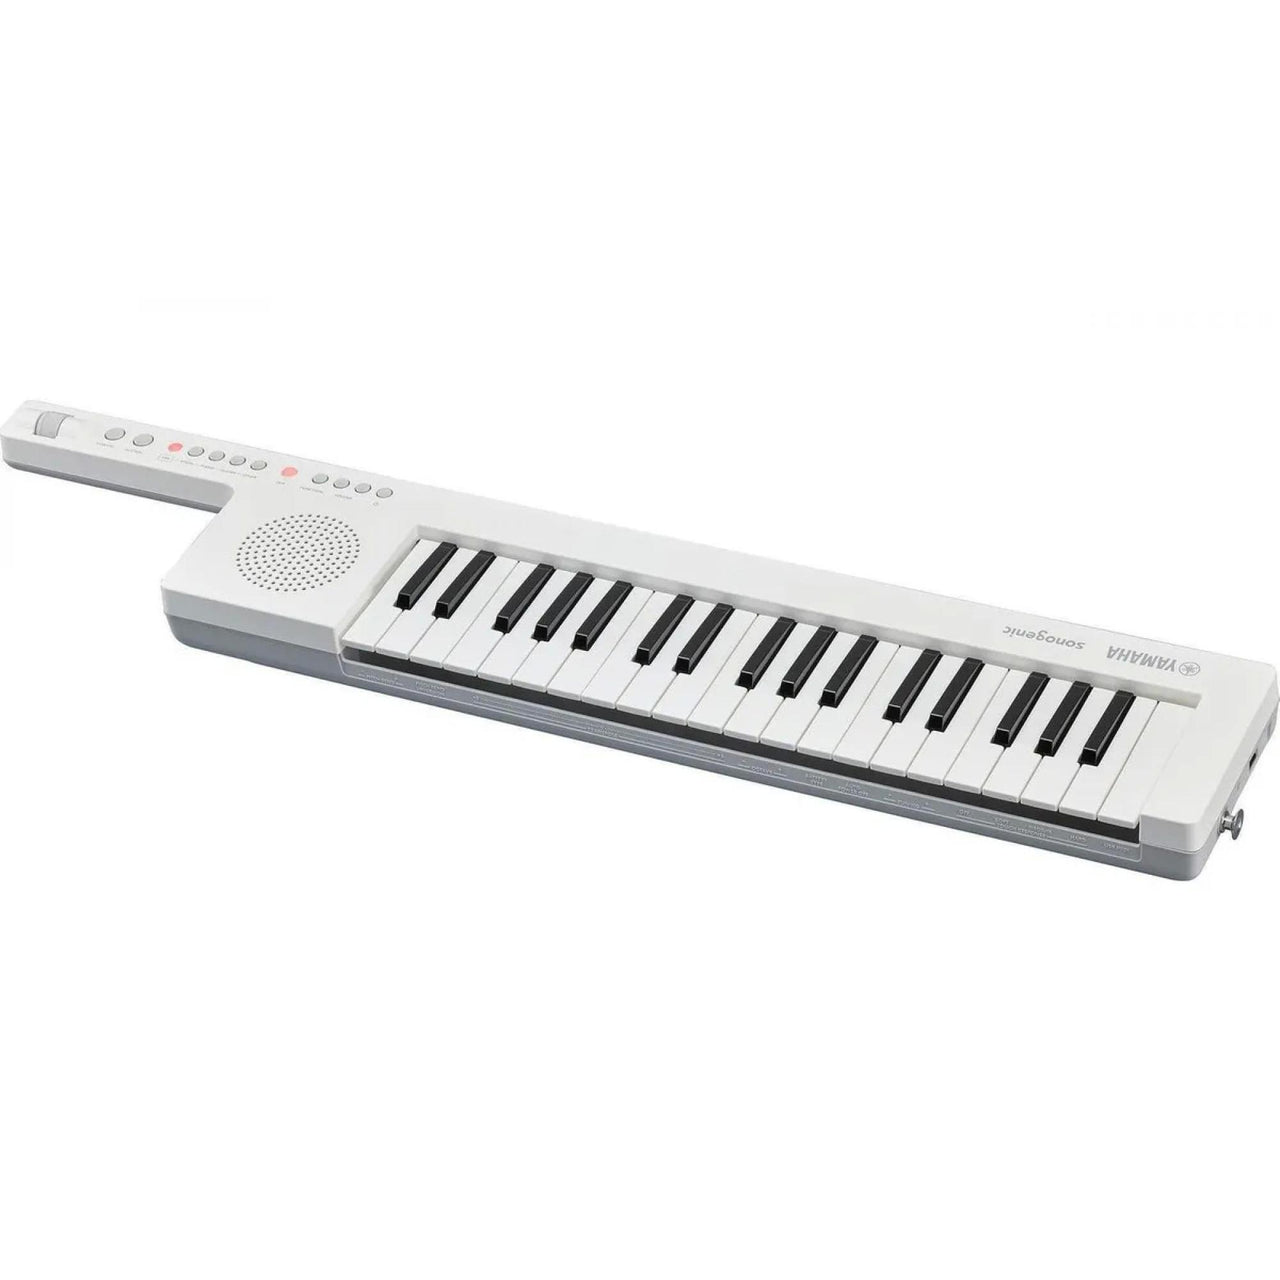 Keytar Yamaha Infantil C/37 Mini Teclas Blanco, Shs-300wh